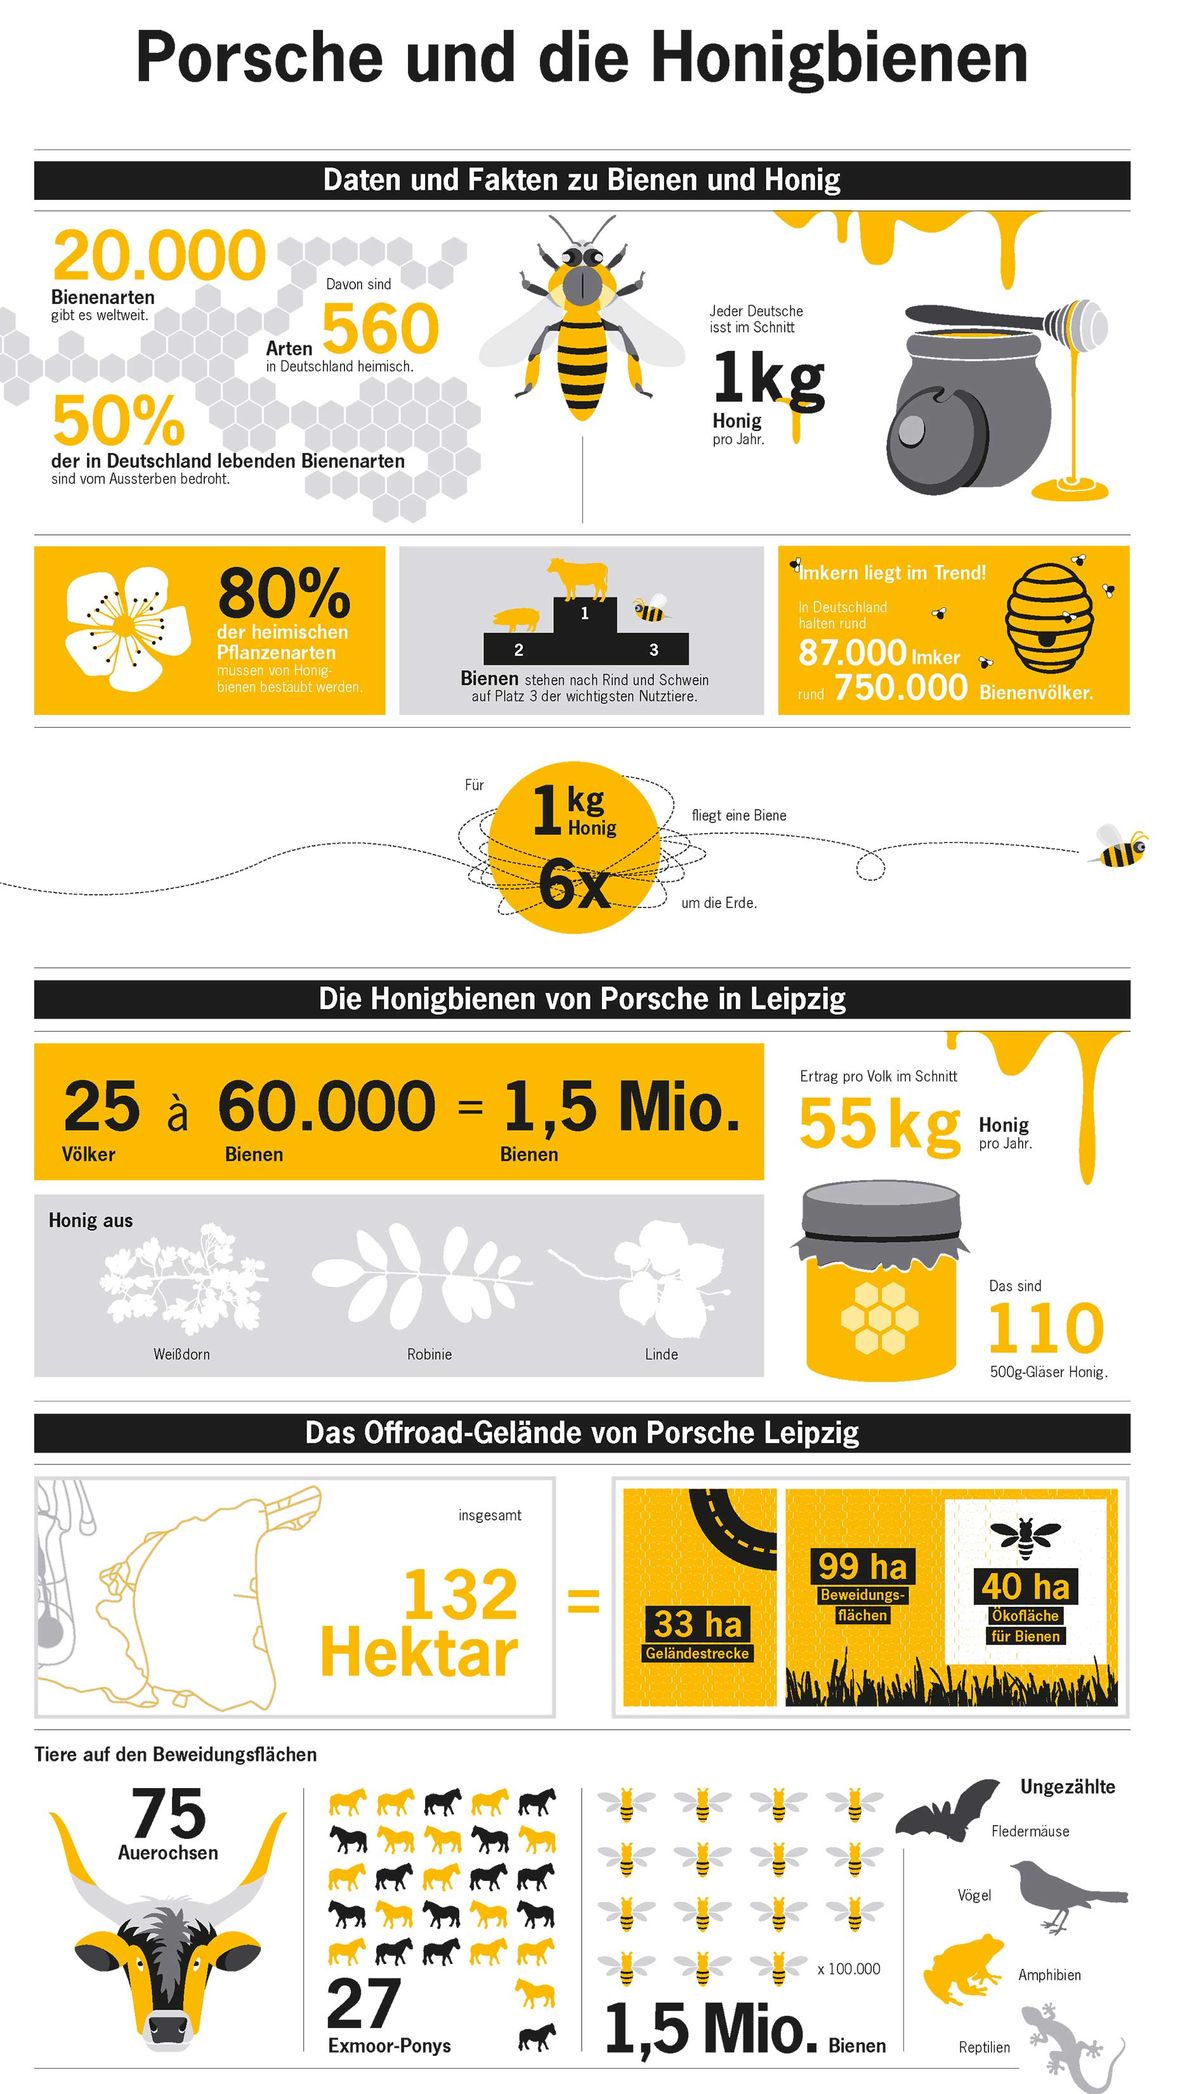 Porsche und die Honigbienen, Infografik 2017.